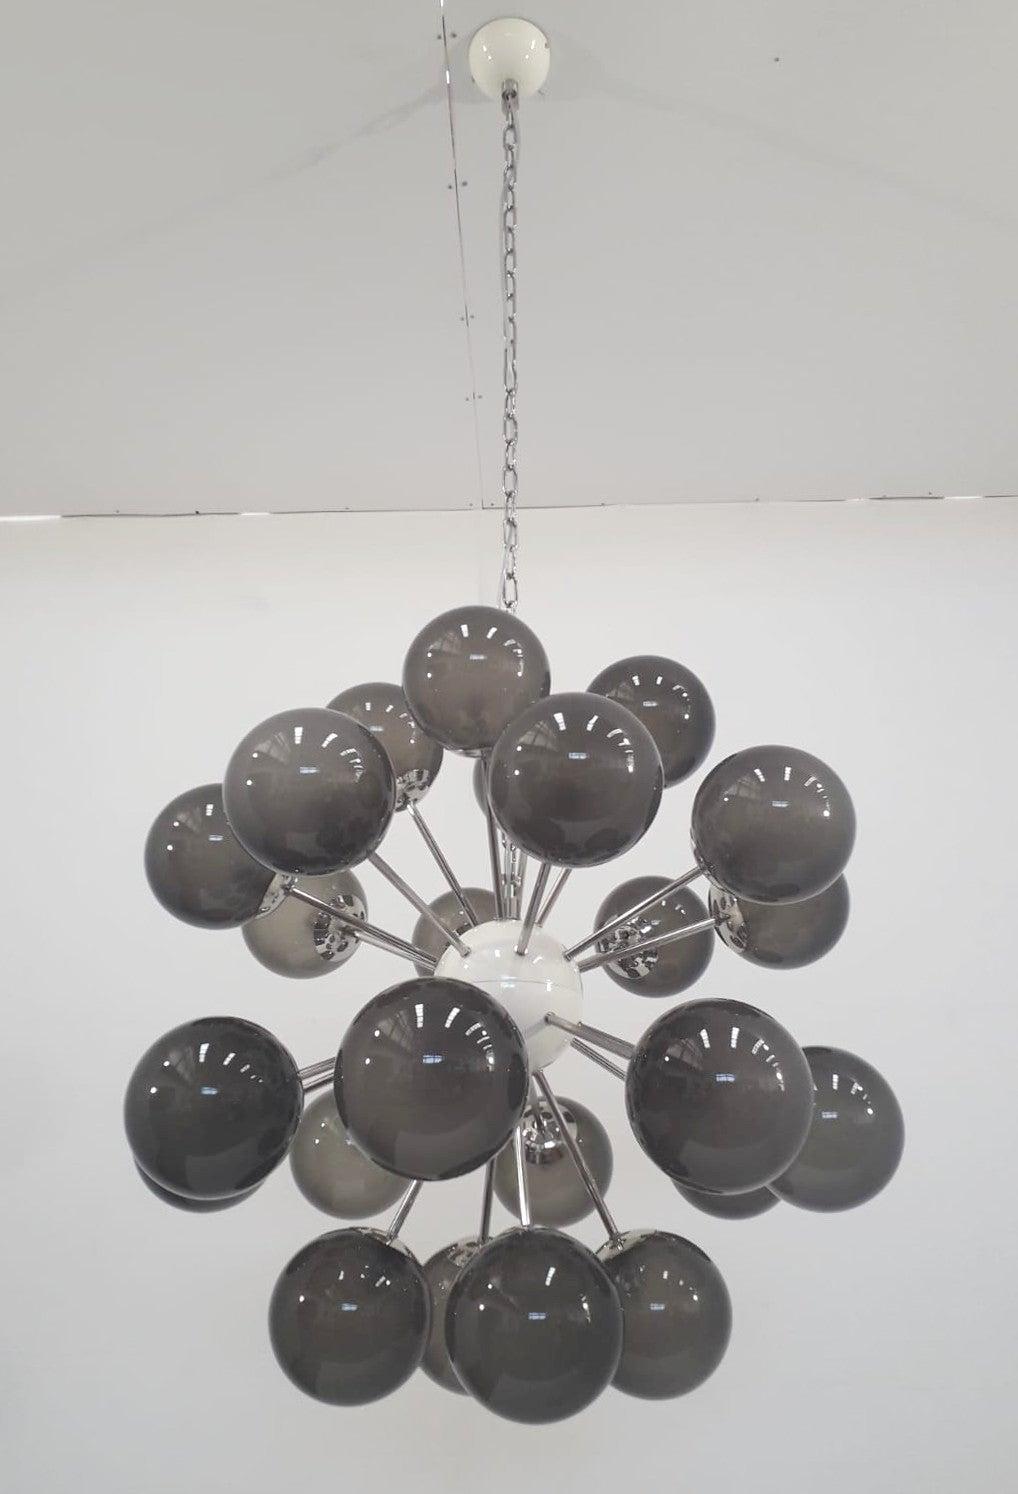 Italienischer Sputnik-Kronleuchter mit 24 Murano-Glaskugeln auf Metallrahmen in poliertem Nickel / Entwurf: Fabio Bergomi für FABIO LTD / Hergestellt in Italien
24 Leuchten / Typ E12 oder E14 / max. 40W pro Stück
Maße: Durchmesser 32 Zoll / Höhe 32